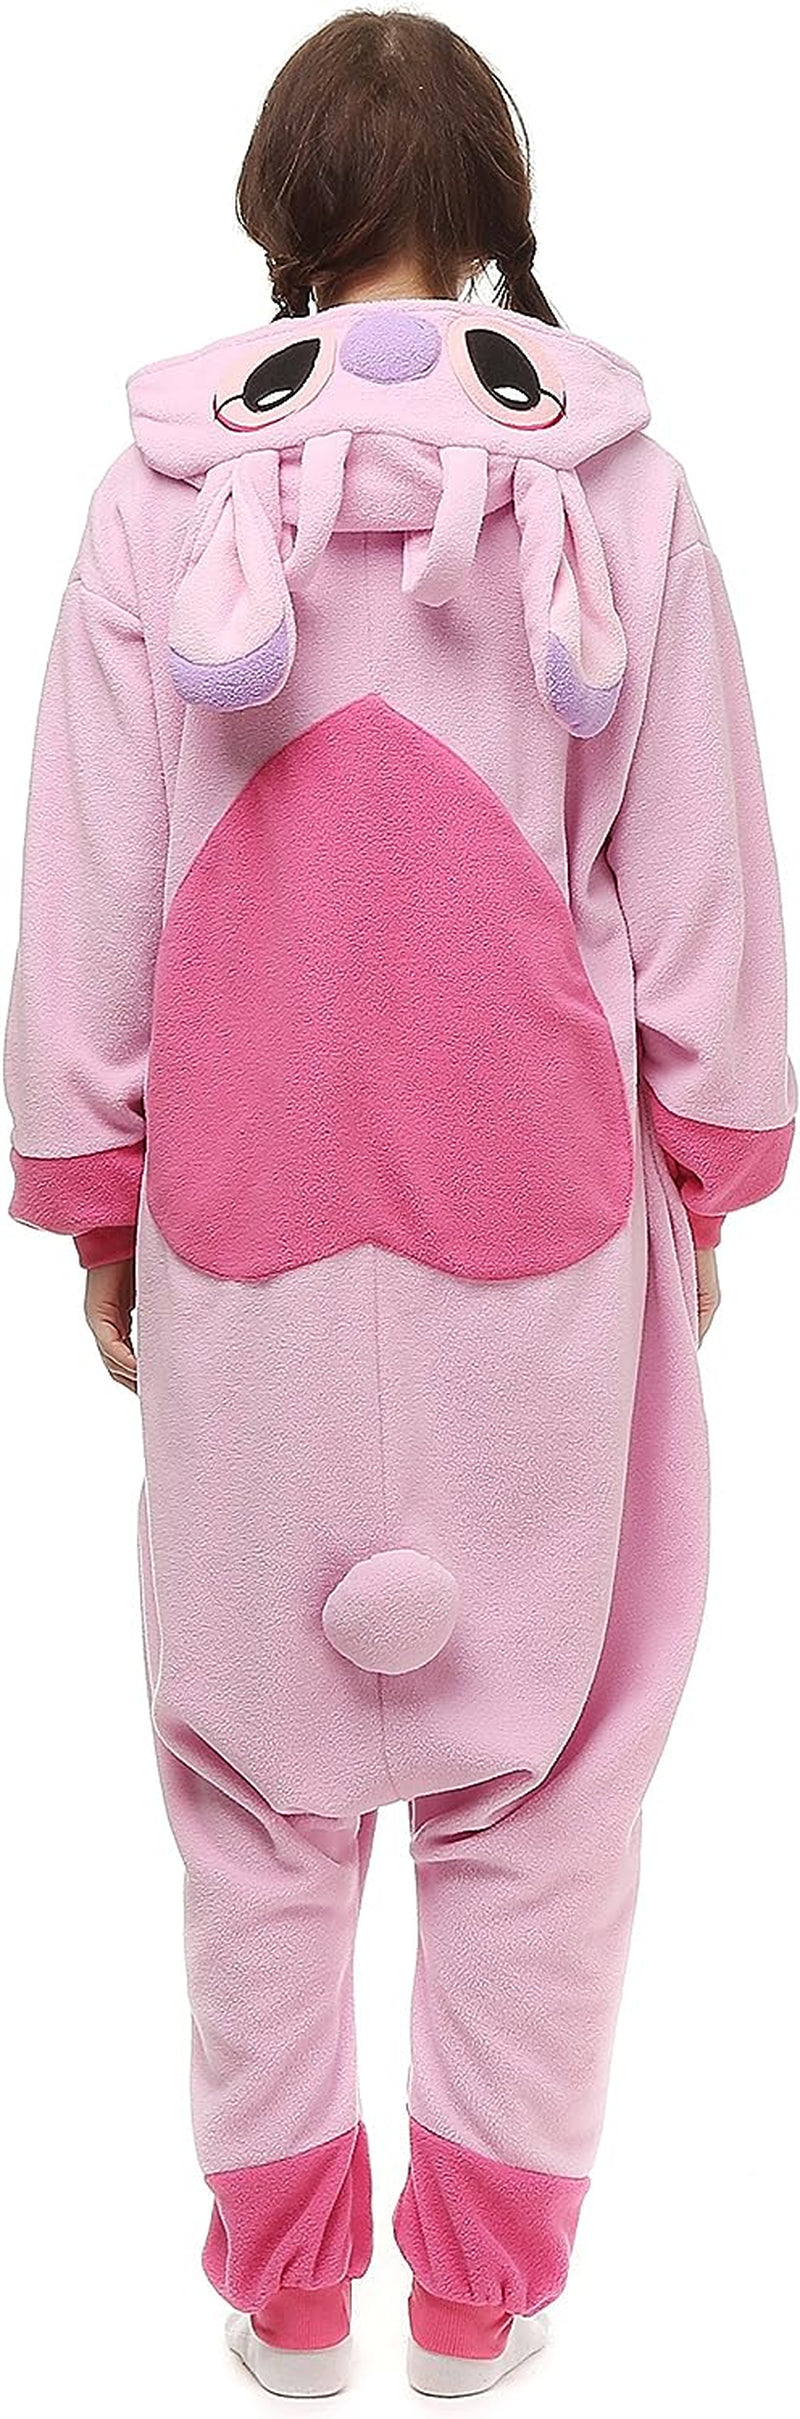 Wishliker Unisex Adult Cow Onesie Costume Halloween Cosplay Animal Pajamas One Piece  Wishliker   